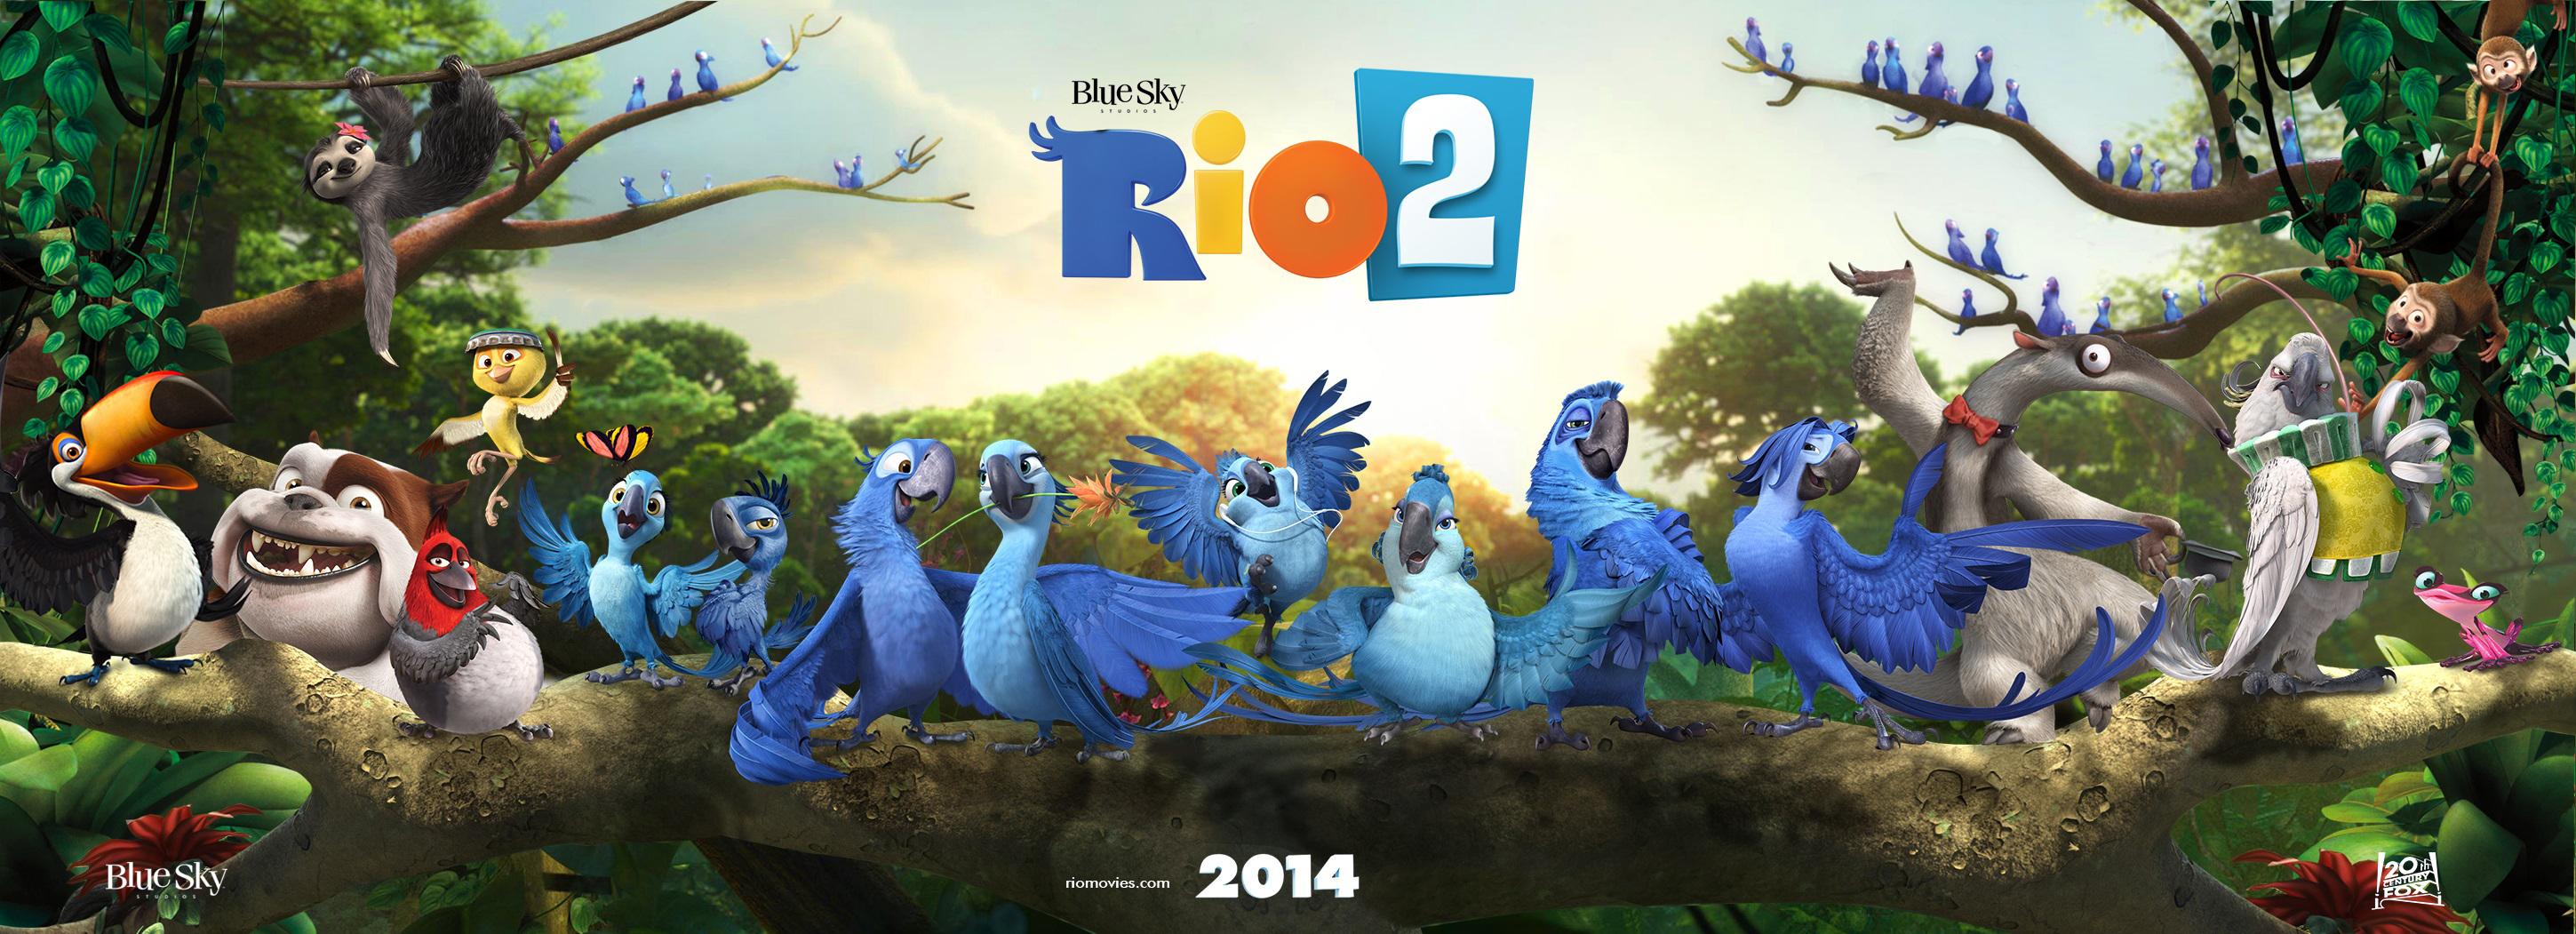 Rio com. Rio 2 (2014). Рио2 Альберто.